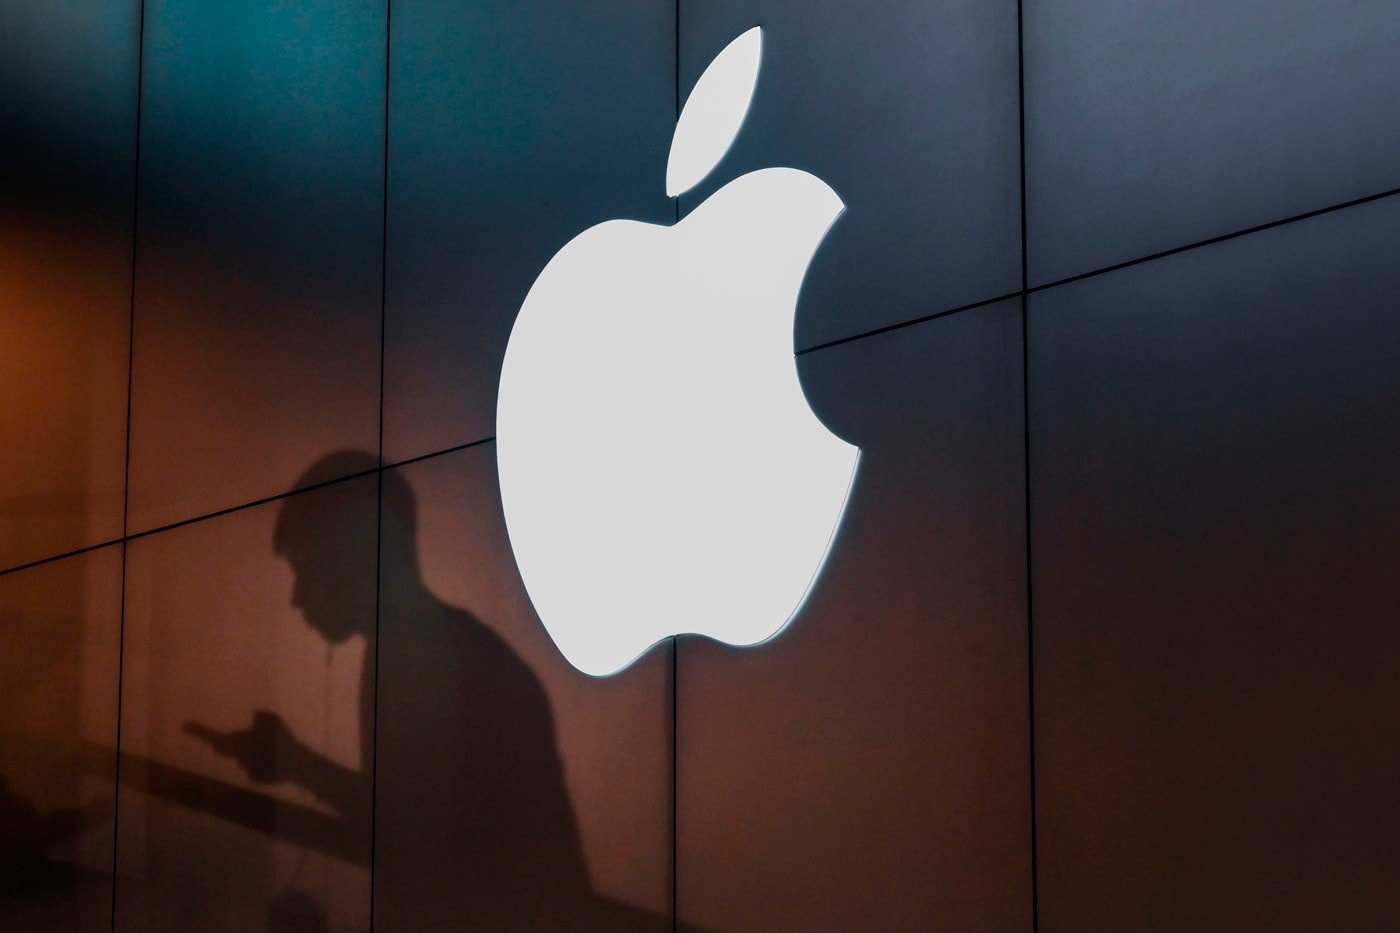 傳奇毒梟 Pablo Escobar 家族成員向 Apple 提起 $26 億美元訴訟